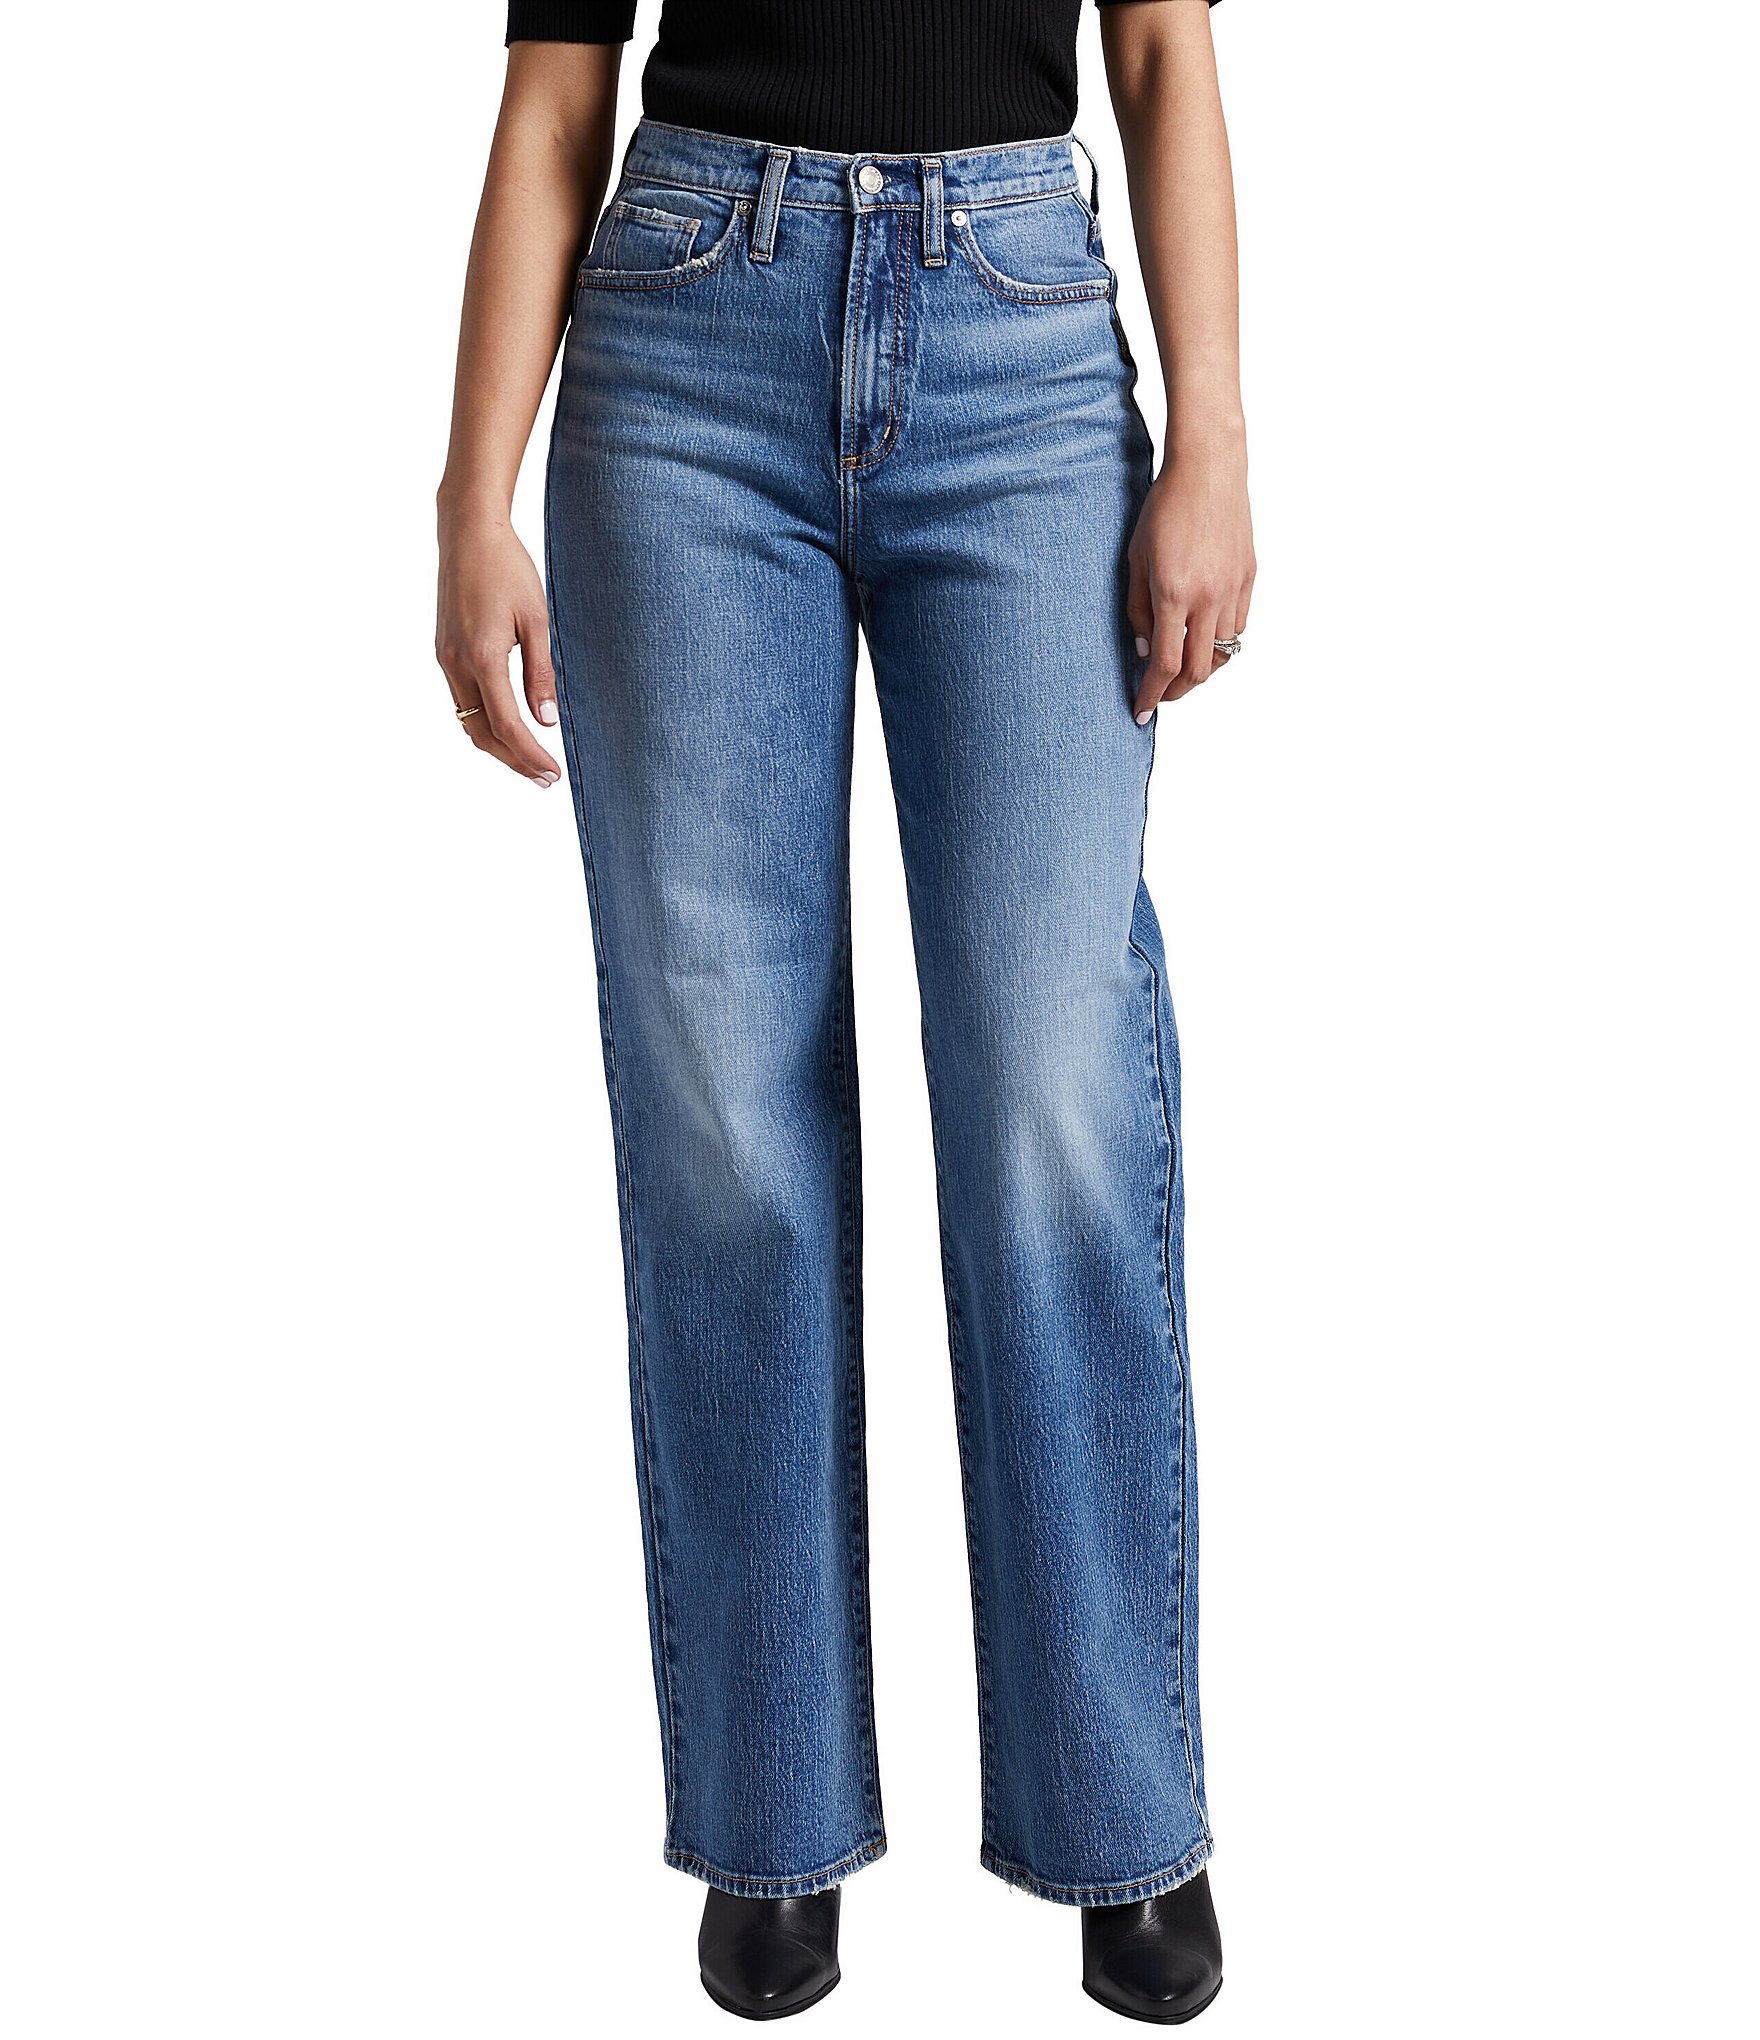 Straight Jeans - Buy Straight Leg Jeans online For Men & Women at Best  Prices in India | Flipkart.com